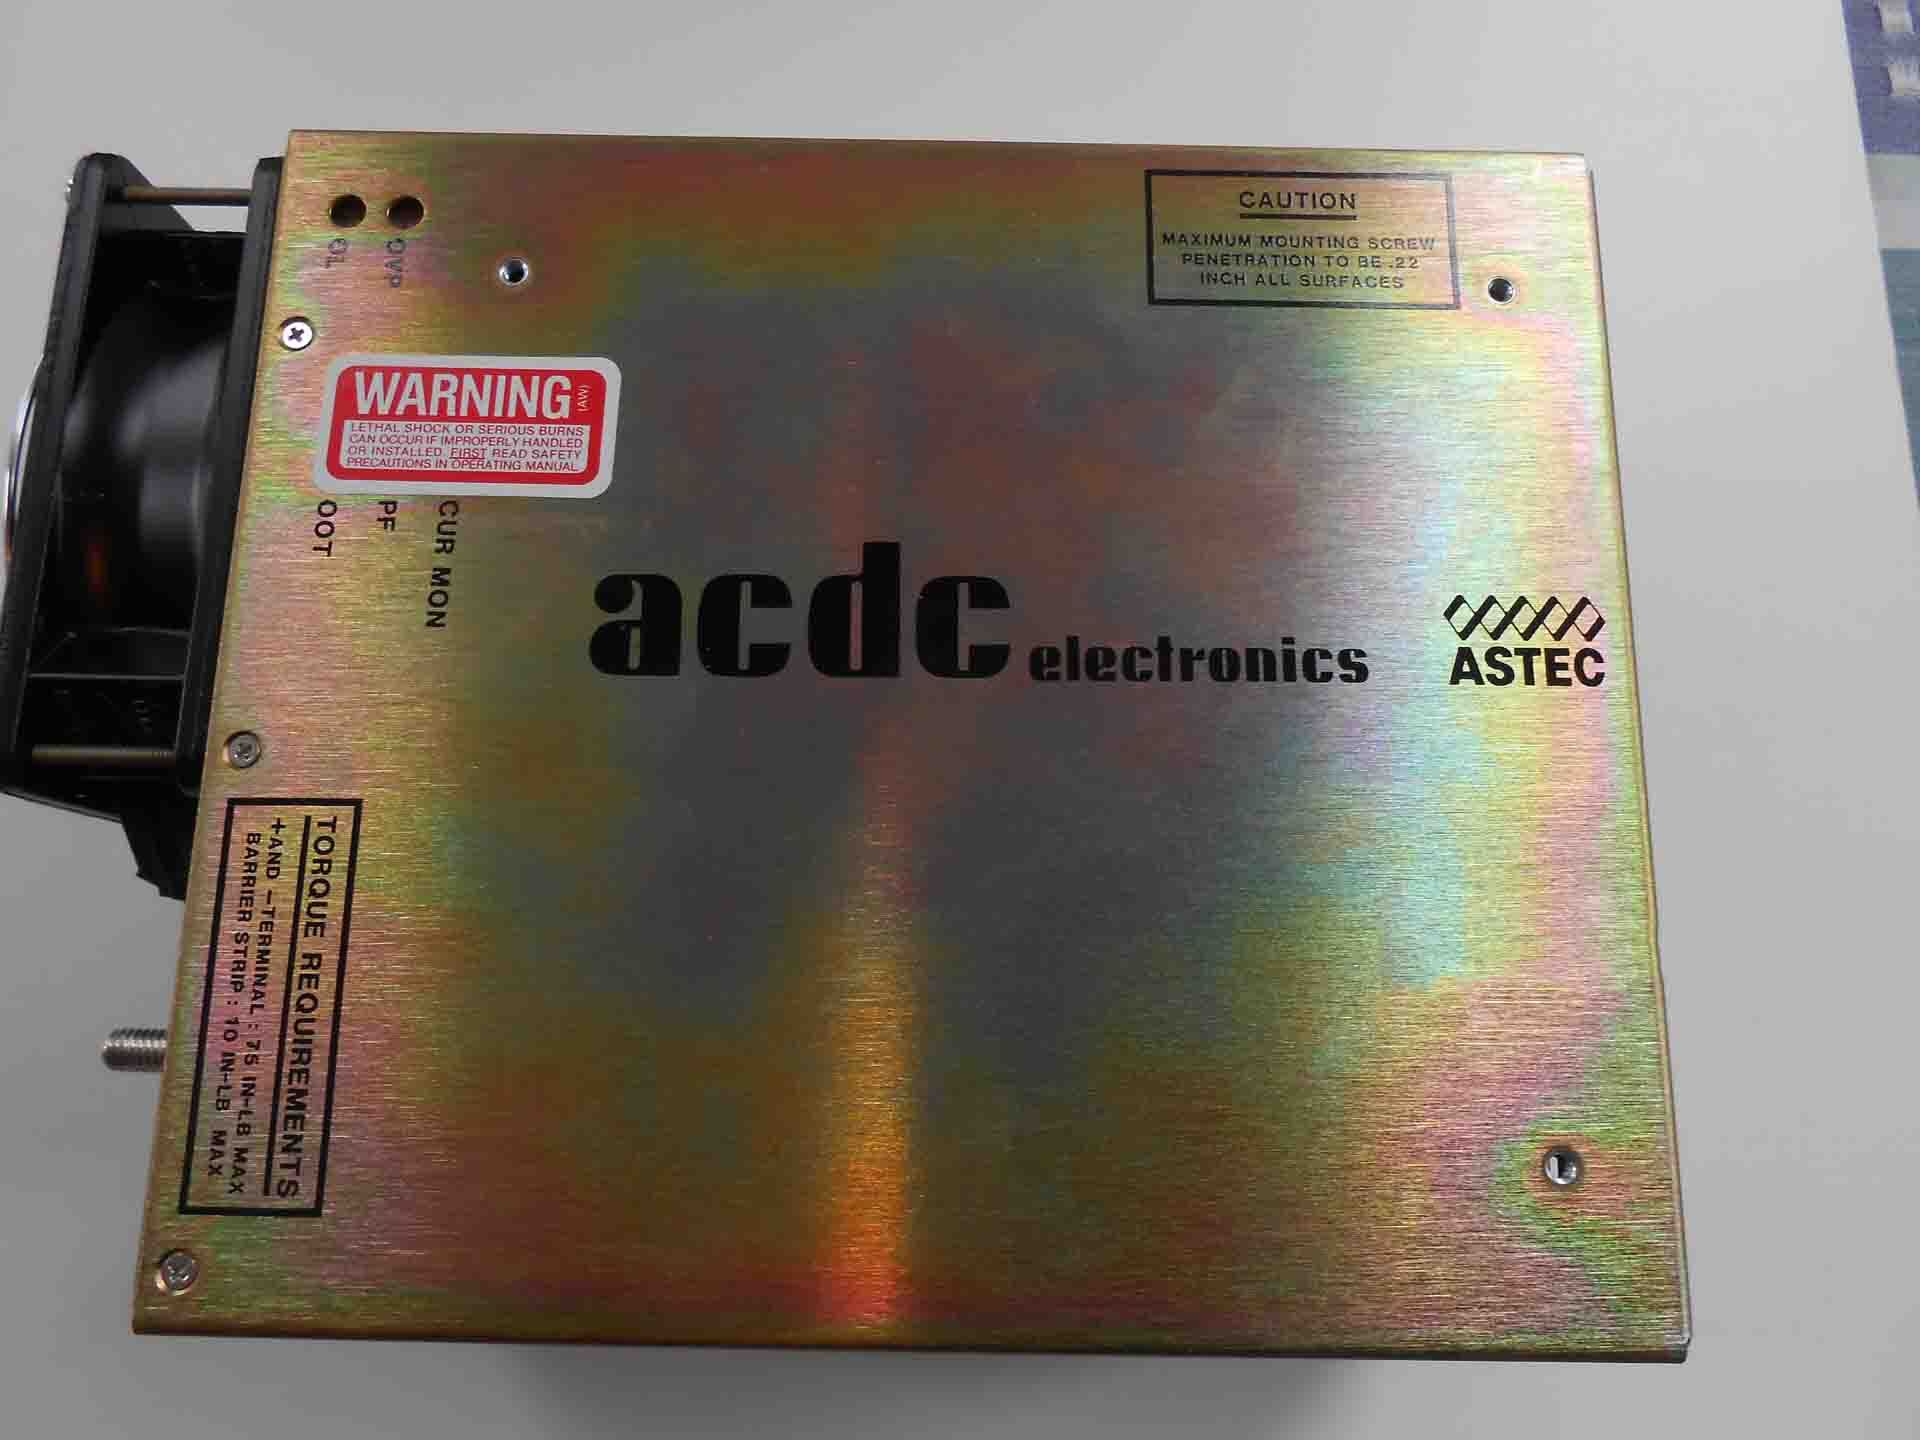 图为 已使用的 ACDC ELECTRONICS JF751A-9000-9066 待售